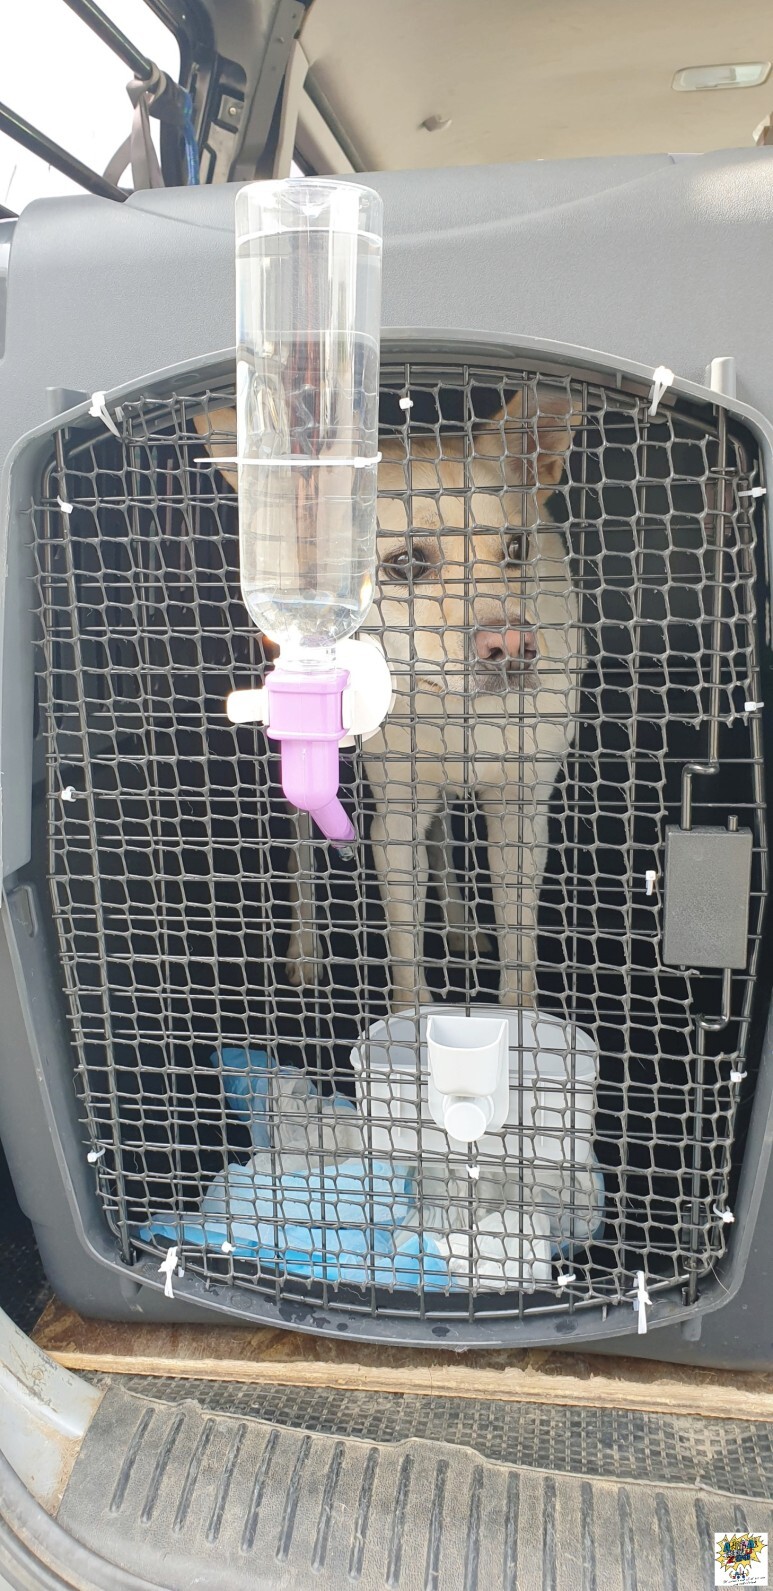 중국광저우에서 강아지한국입국 강아지검역 강아지한국운송 강아지만한국데려오기 강아지항공화물운송 강아지해외카고운송 강아지한국통관 Foreign Dog Owner South Korea Dog cat Departure Service